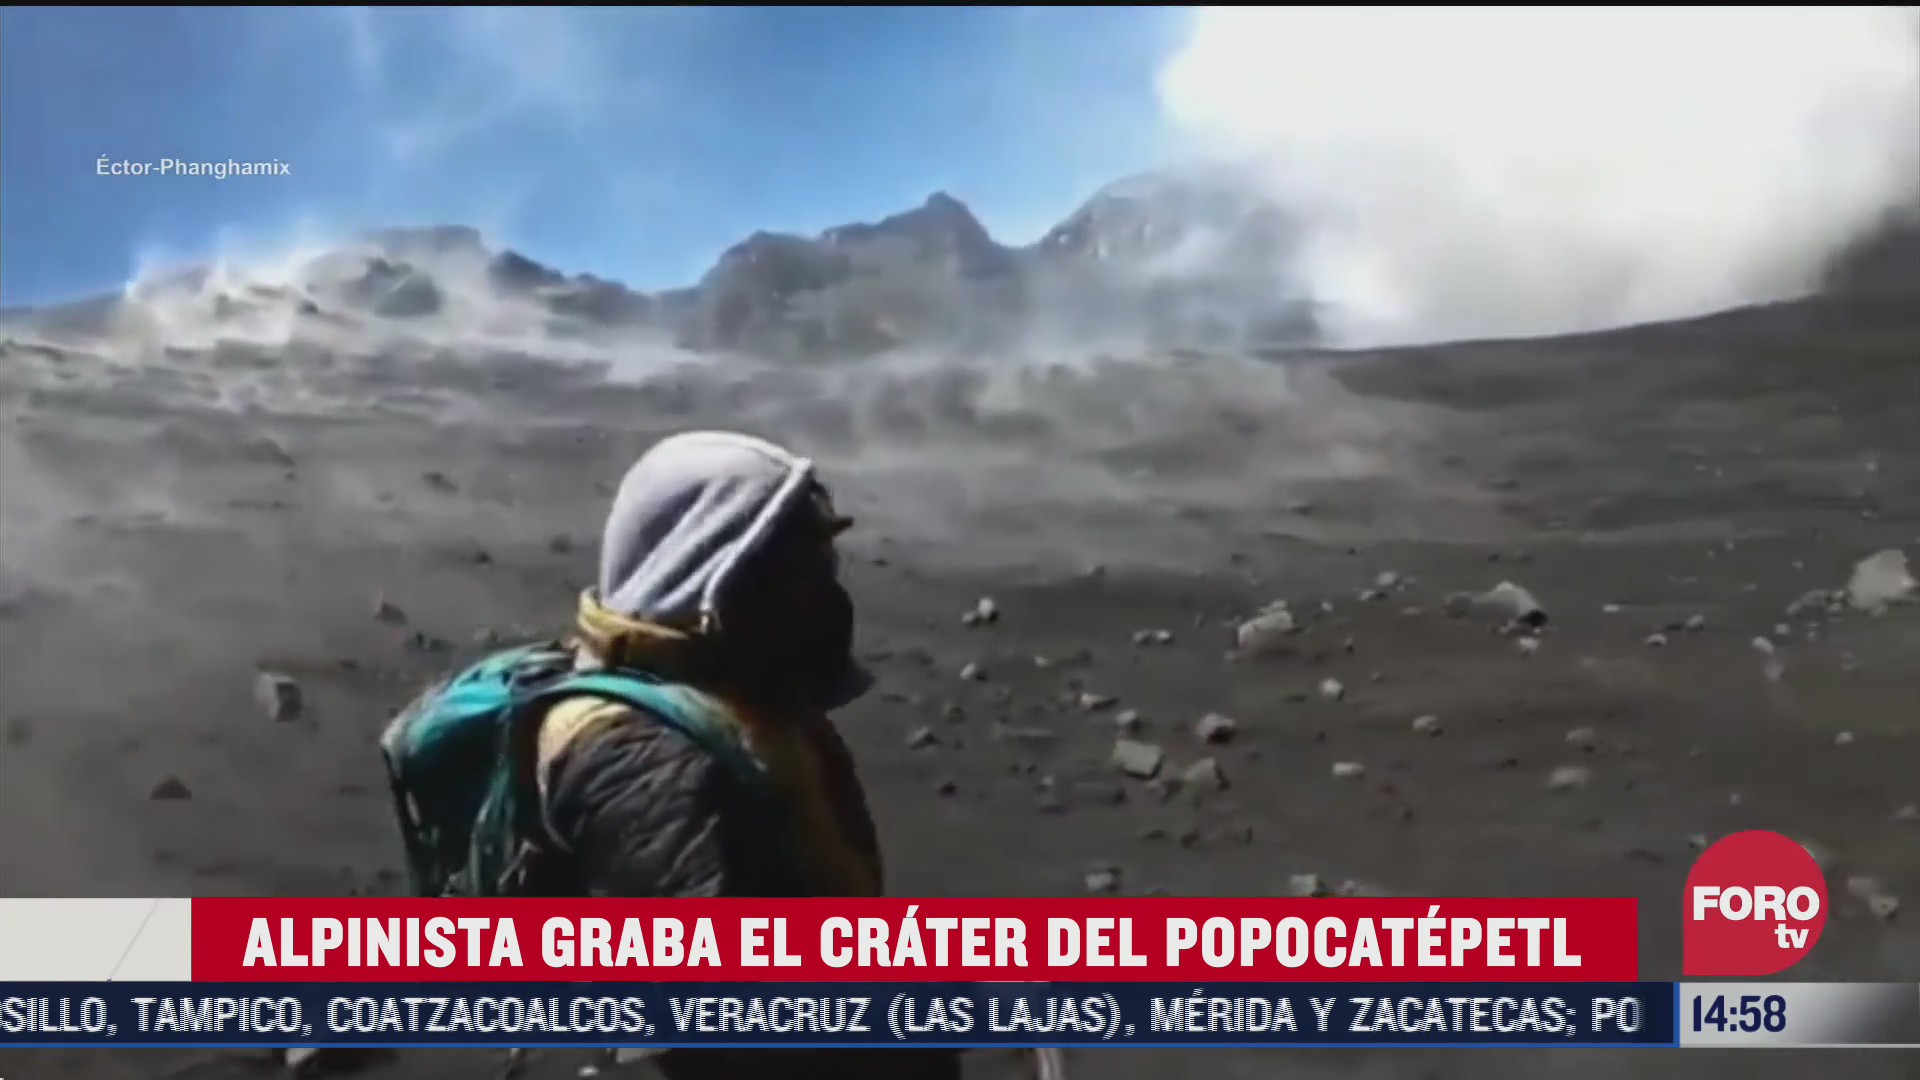 alpinista graba crater del popocatepetl